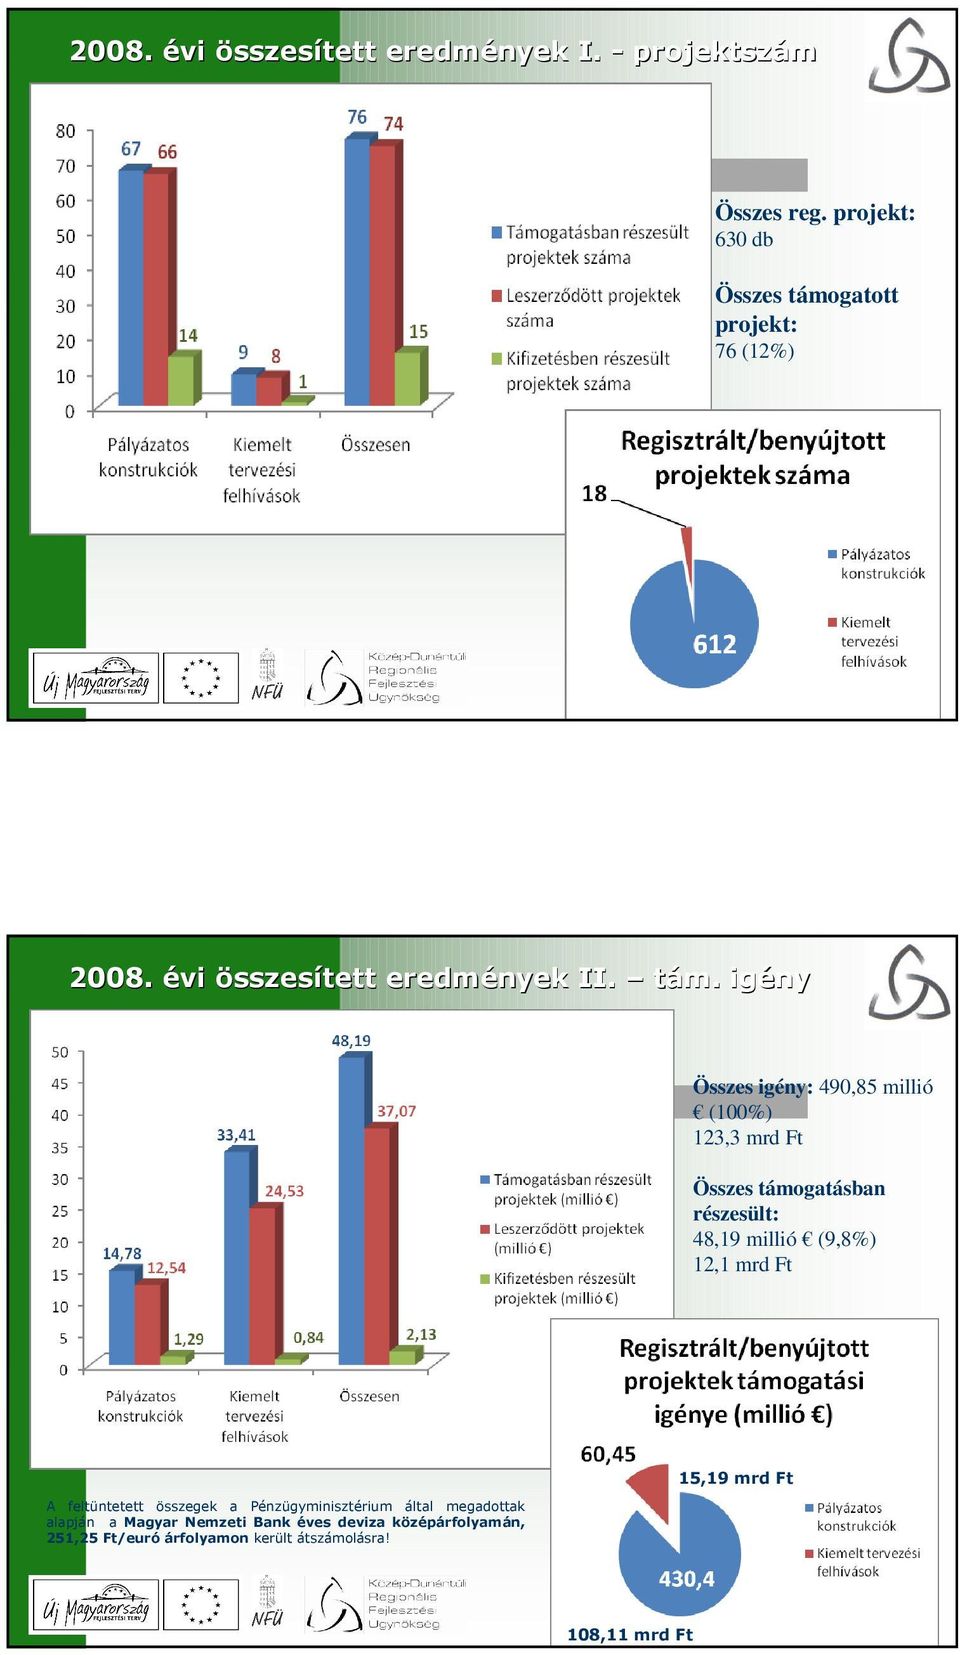 gatott projekt: 76 (12%) 3 2008. évi összesített eredmények II. tám.